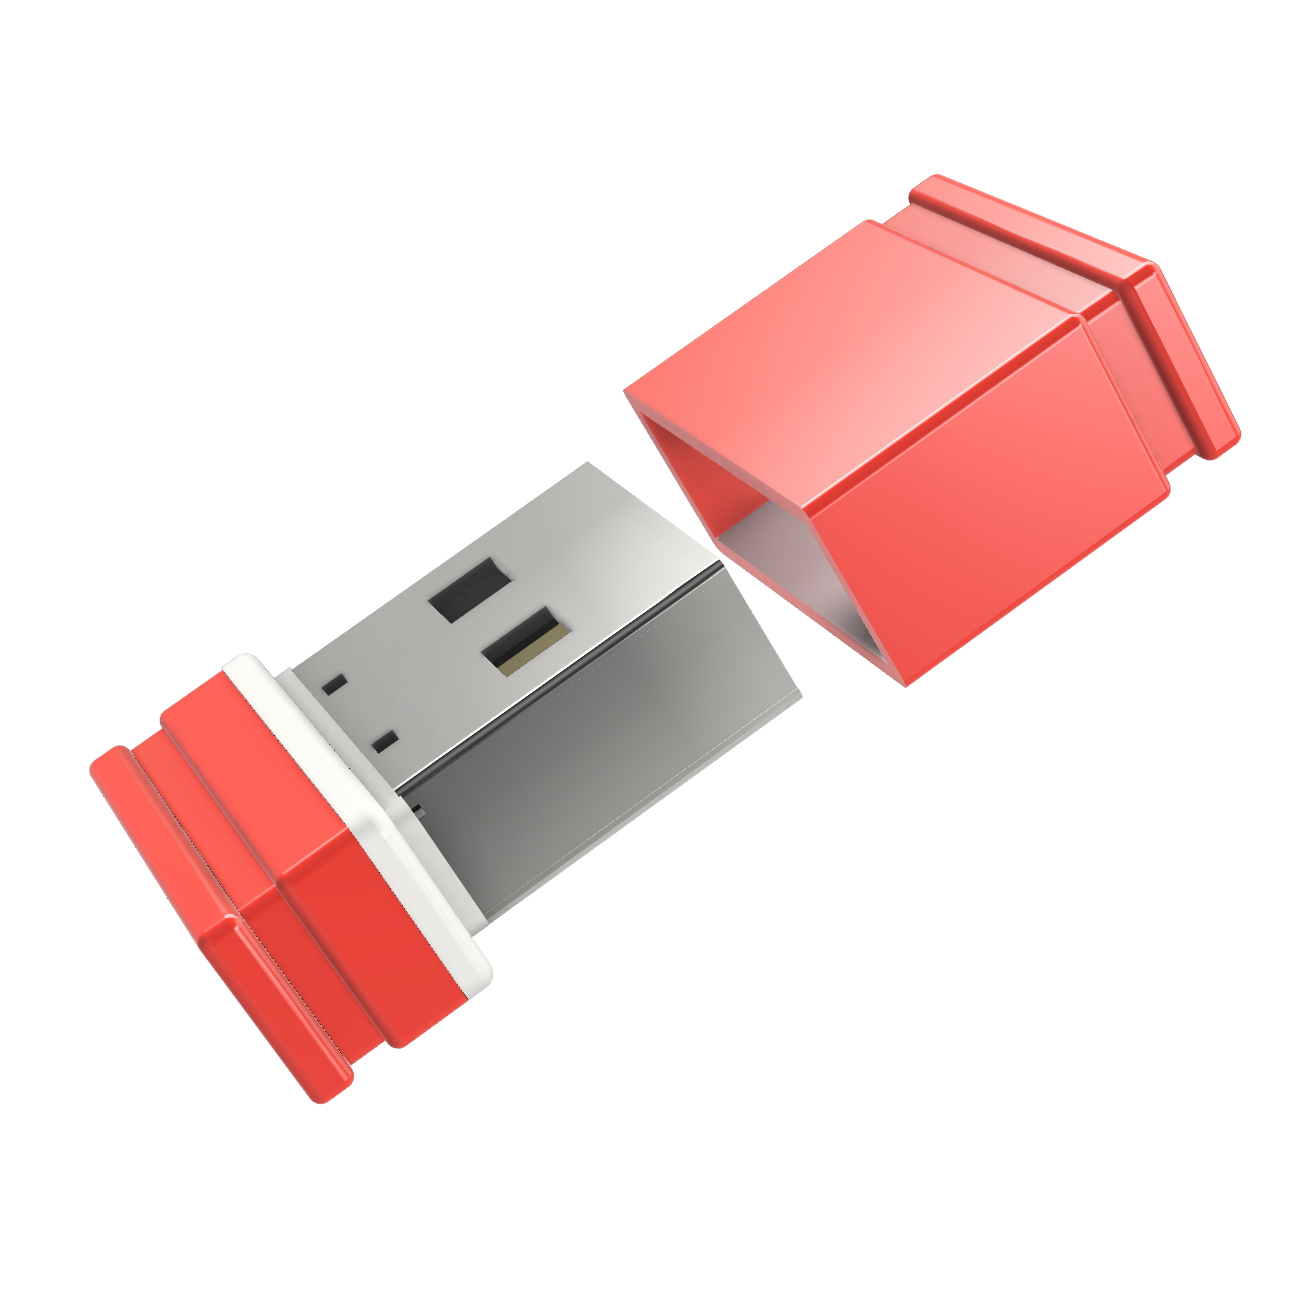 GB) GERMANY (Rot/Weiss, ®ULTRA USB 8 P1 Mini USB-Stick